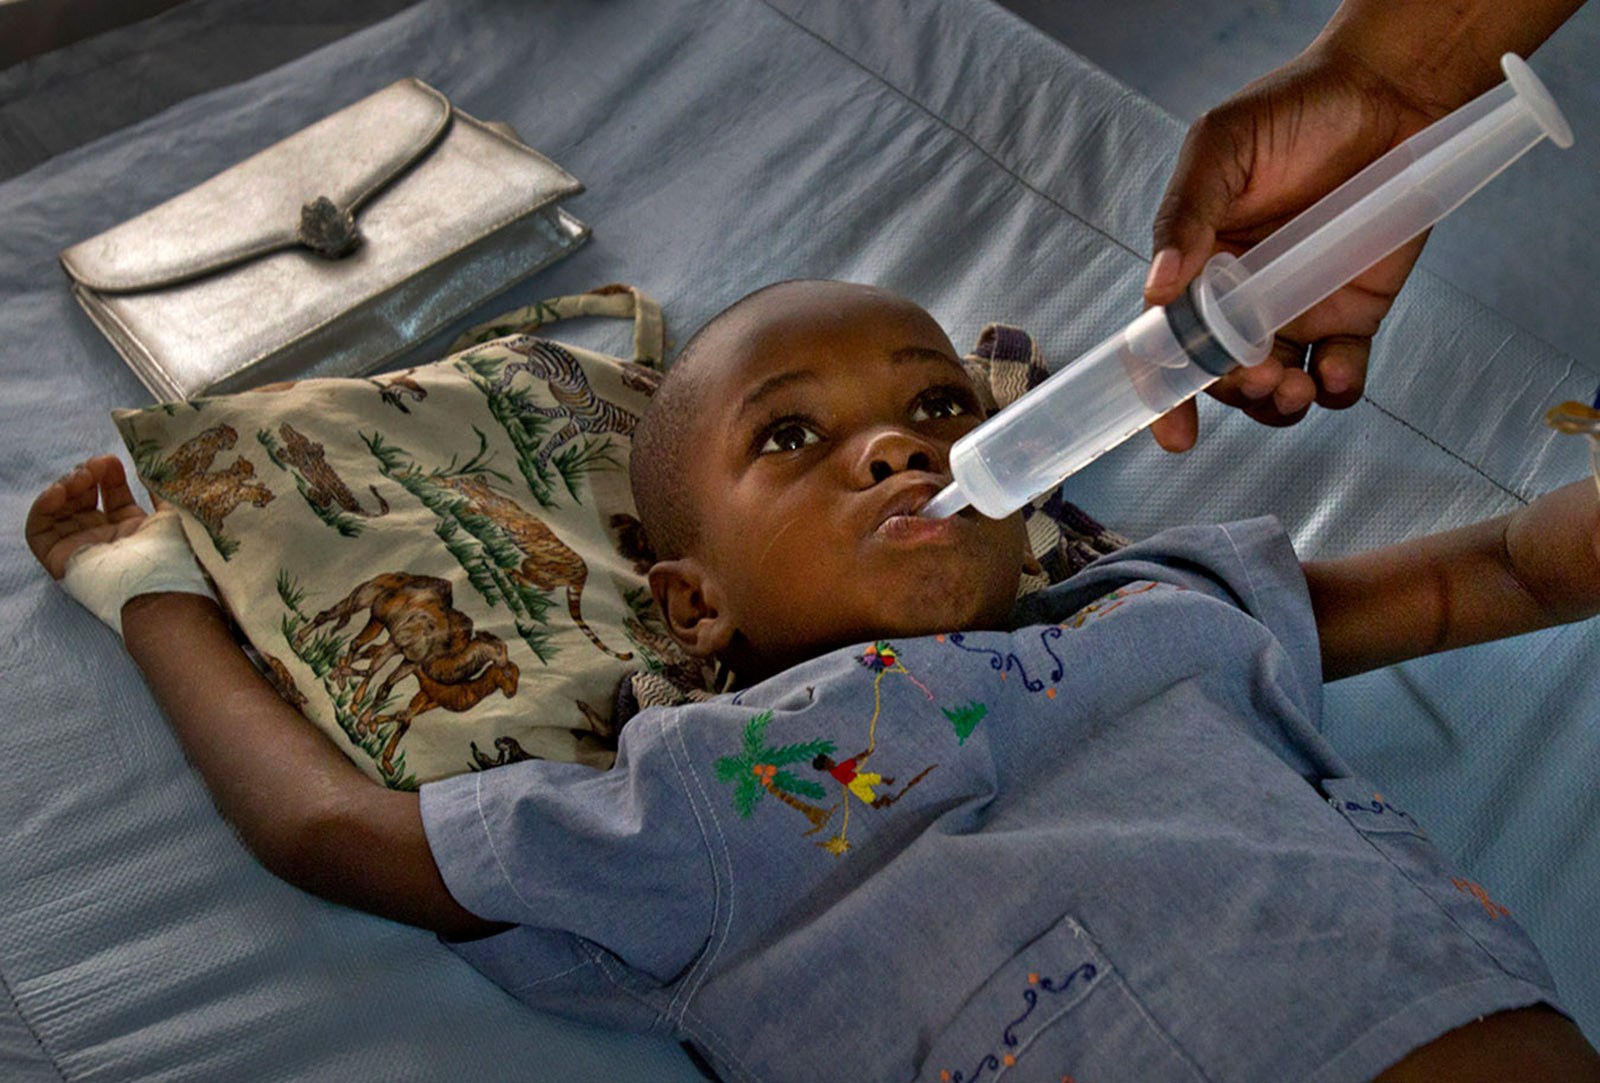 12 Die As Cholera Outbreak Occurs In North-Eastern Nigeria